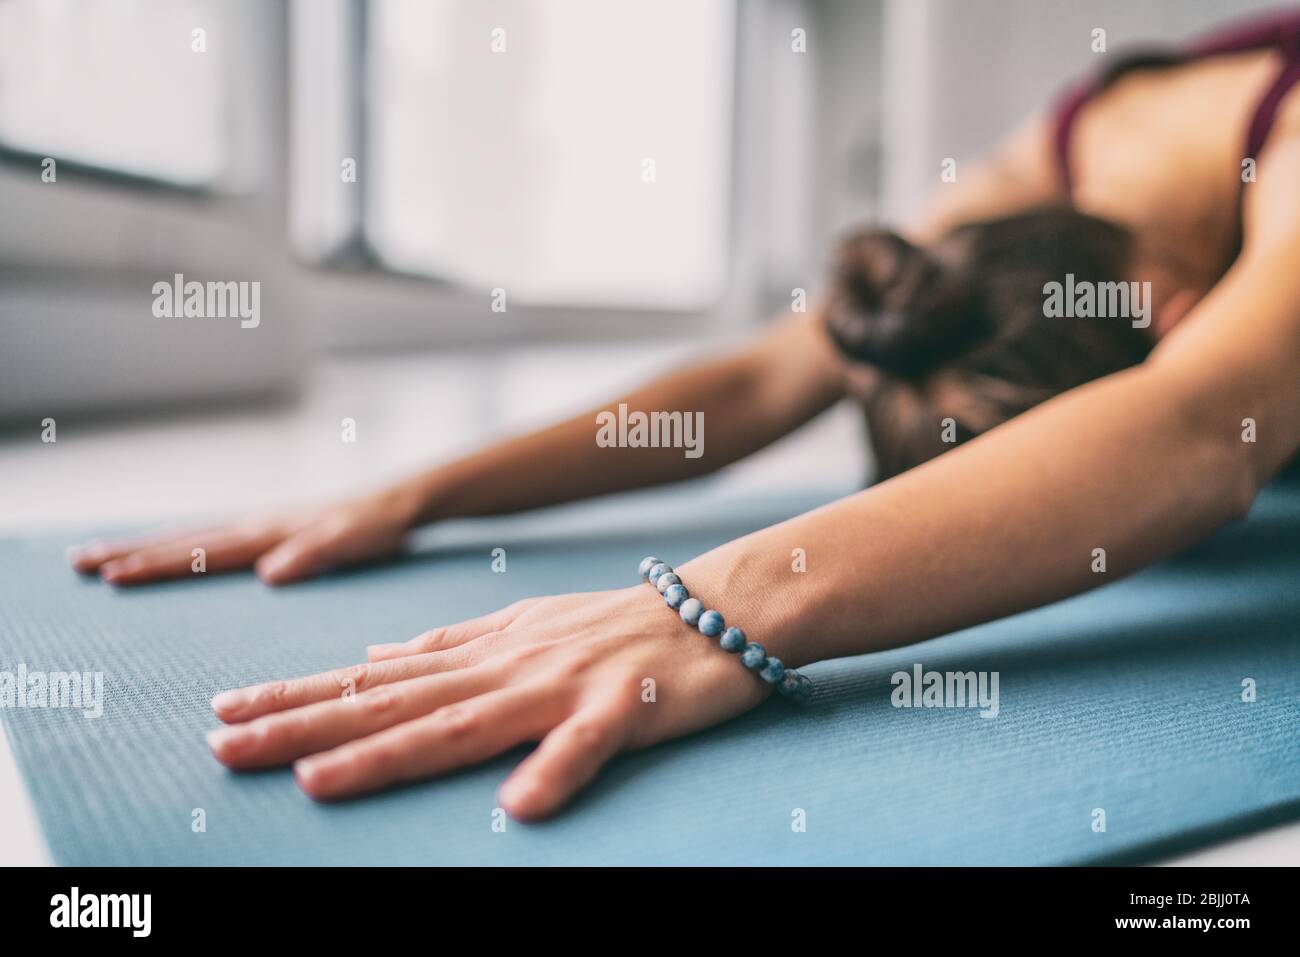 Yoga meditación bienestar fondo - mujer haciendo niños pose estiramiento en la alfombrilla de ejercicio - entrenamiento de la clase de fitness en casa o gimnasio activo vivir. Foto de stock